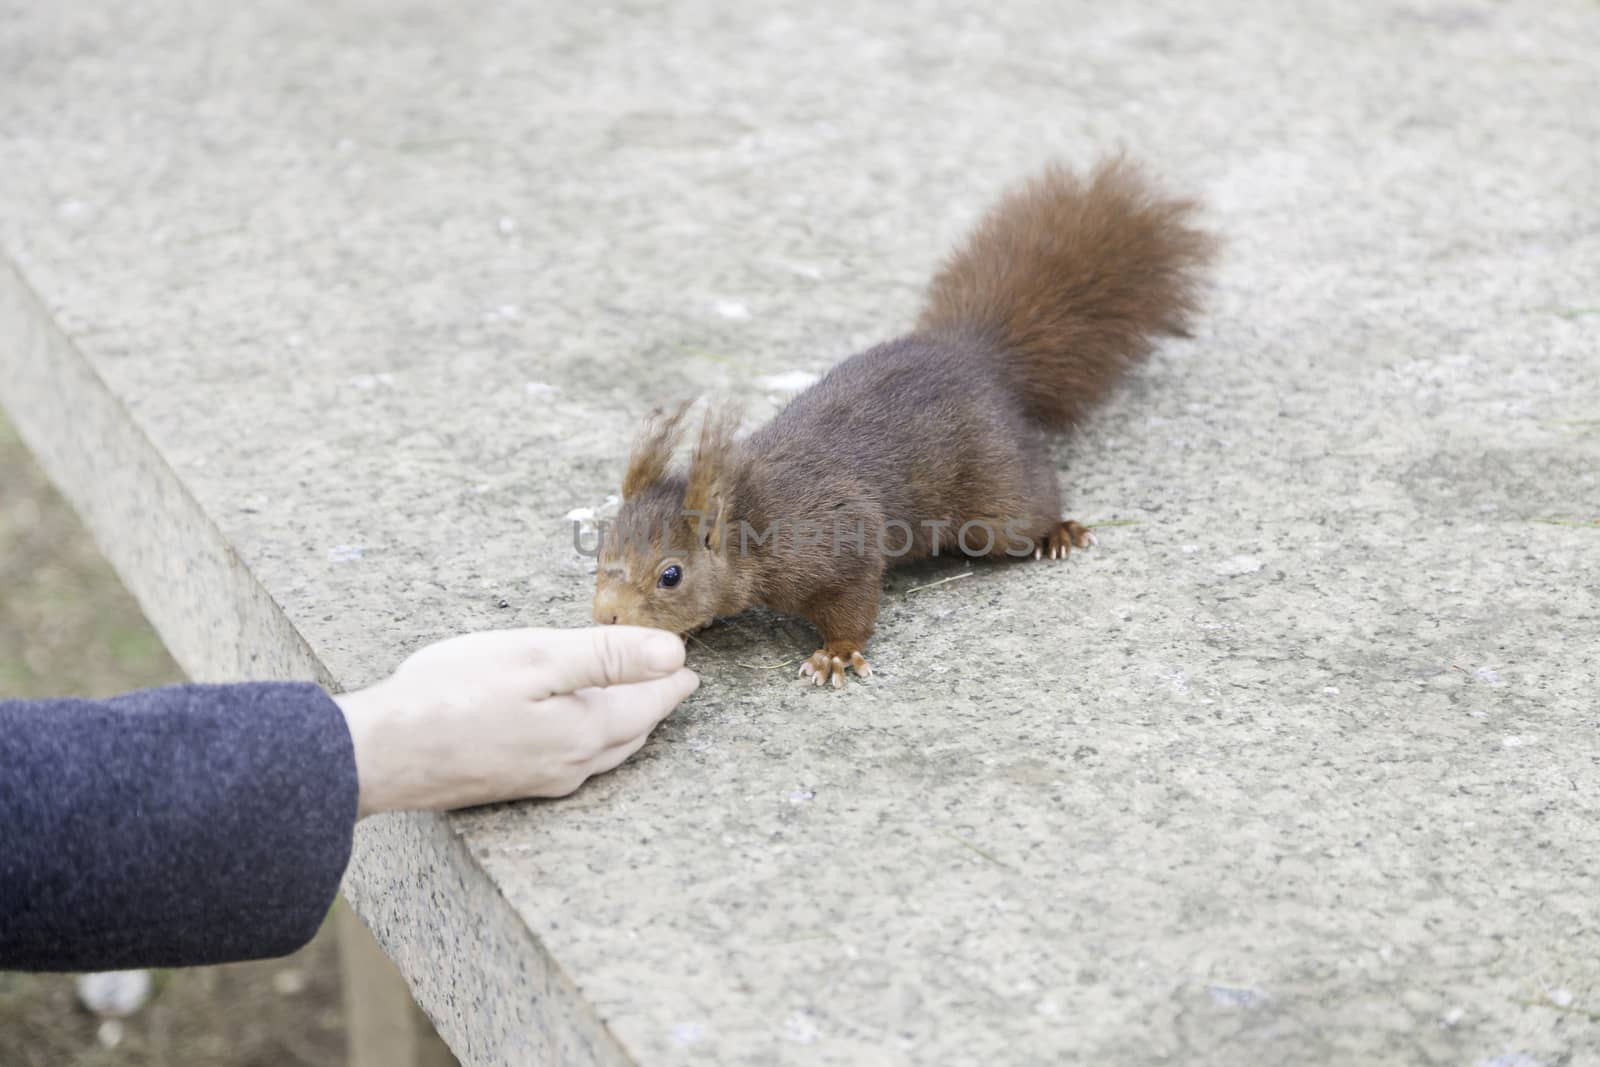 Feeding a squirrel, detail of a person feeding a wild squirrel nut